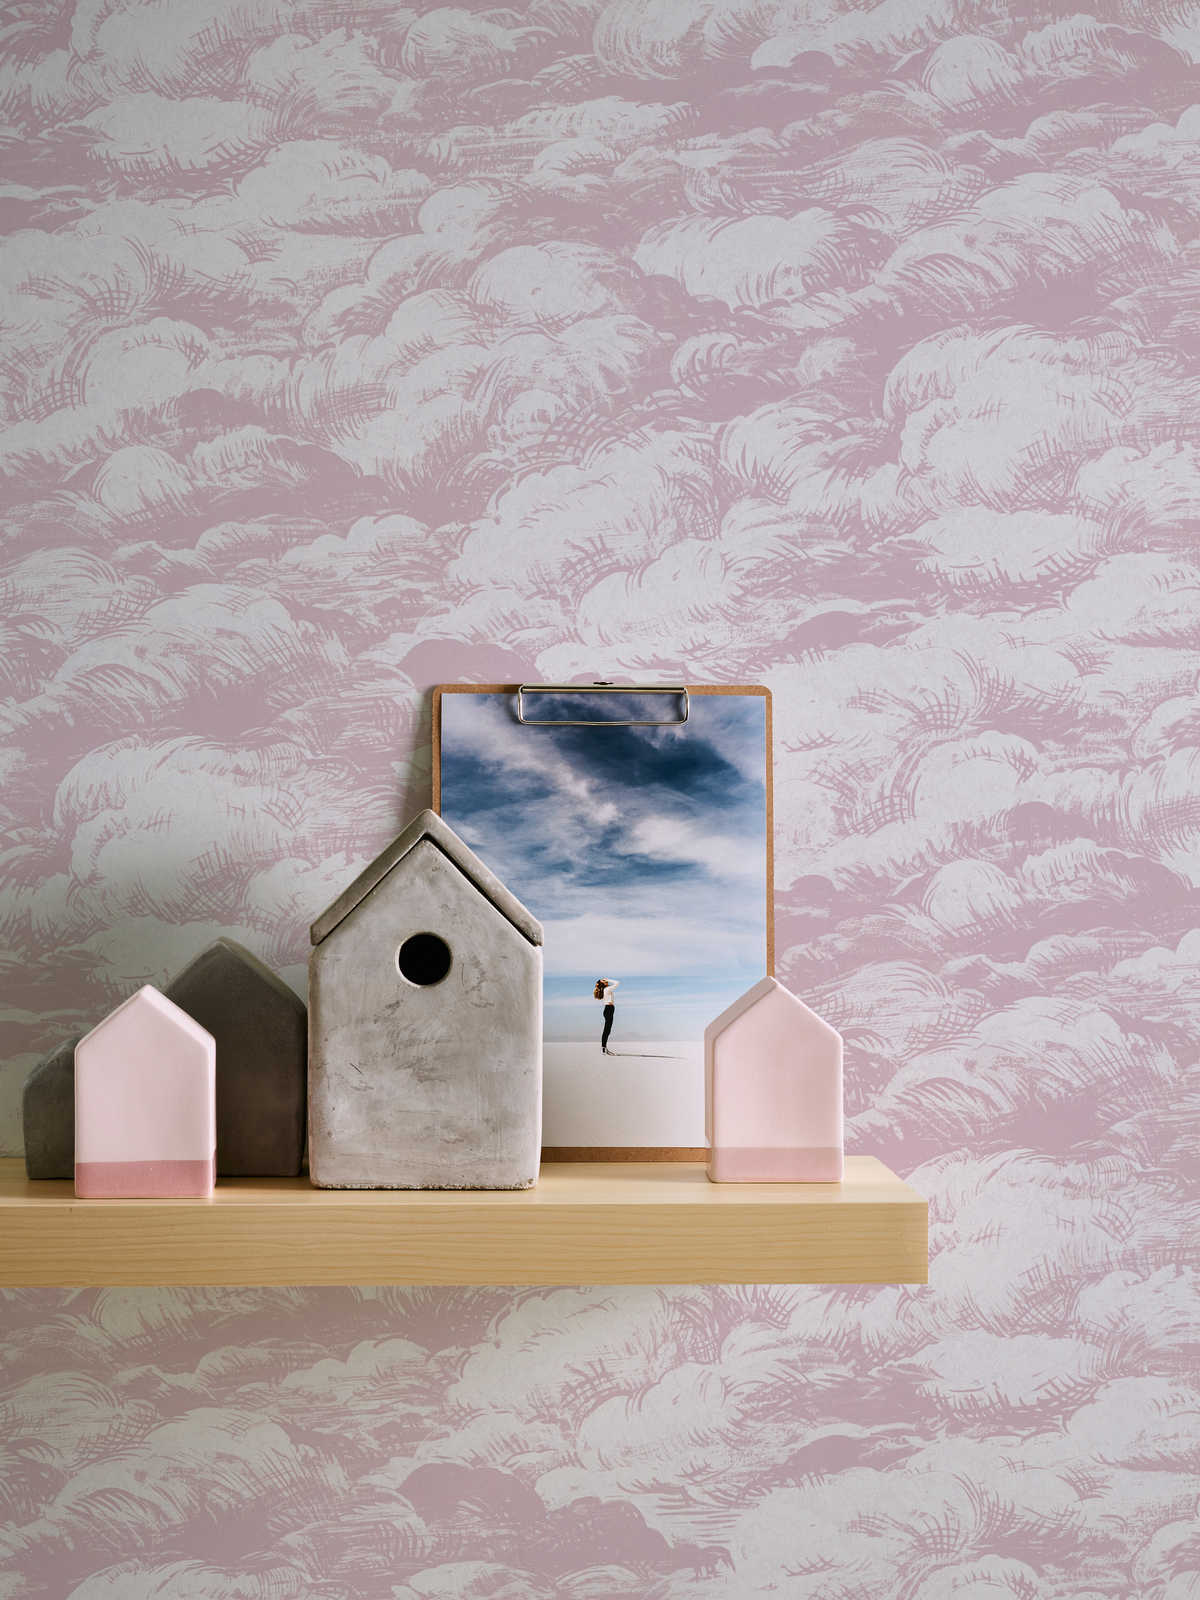             Wallpaper old pink clouds design vintage landscape - pink, white
        